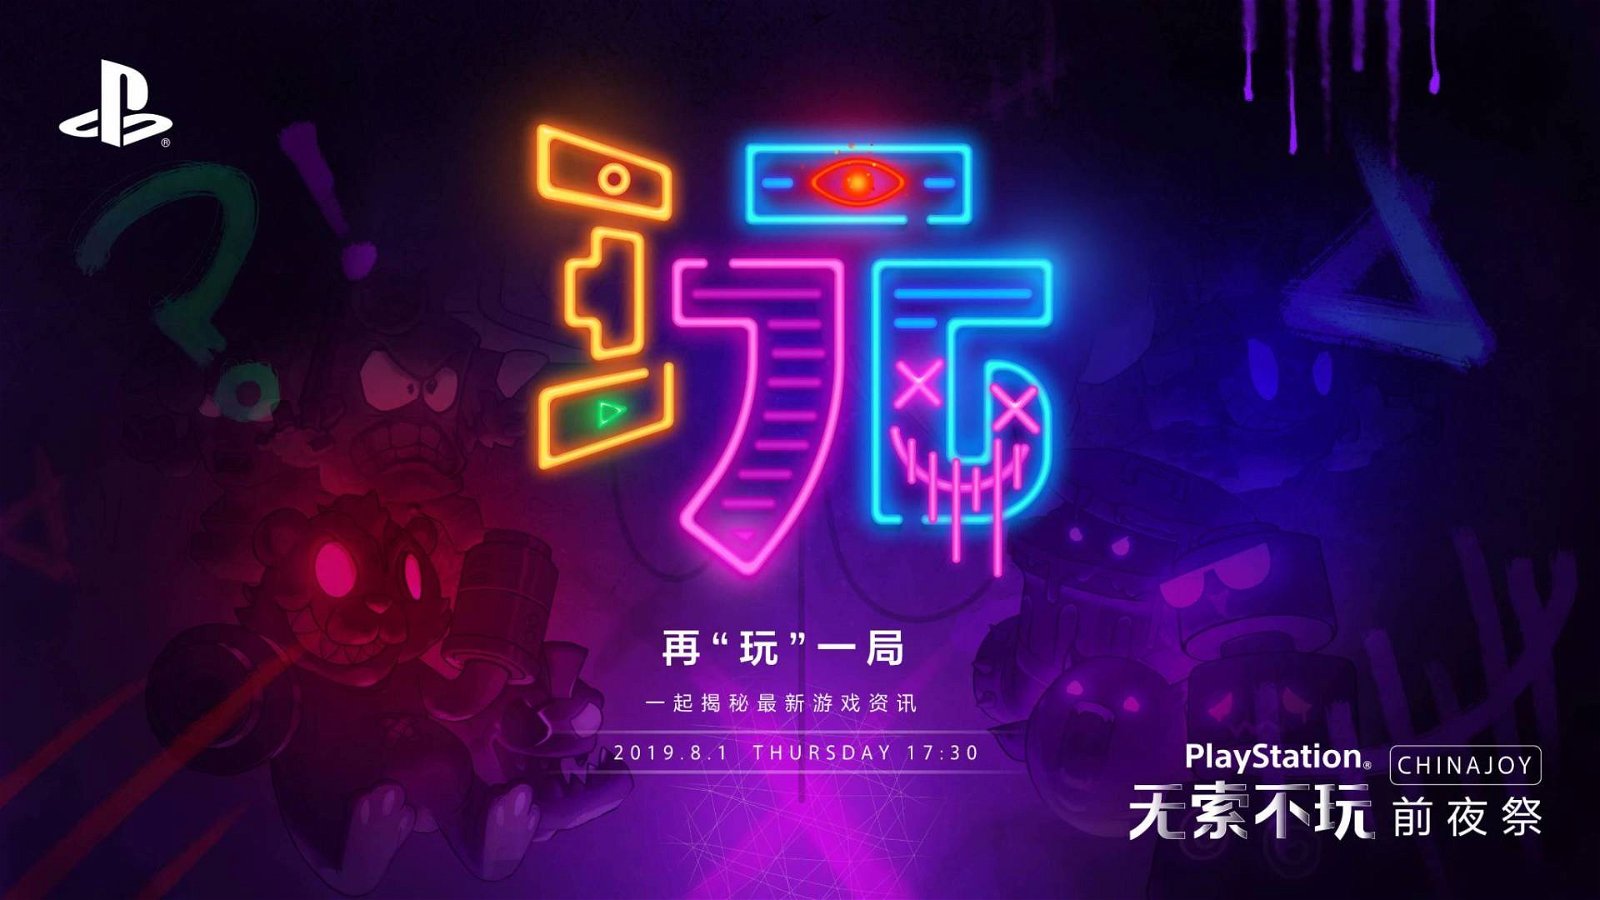 Immagine di Giochi PS4 ChinaJoy 2019: ecco i trailer dei giochi presentati alla fiera